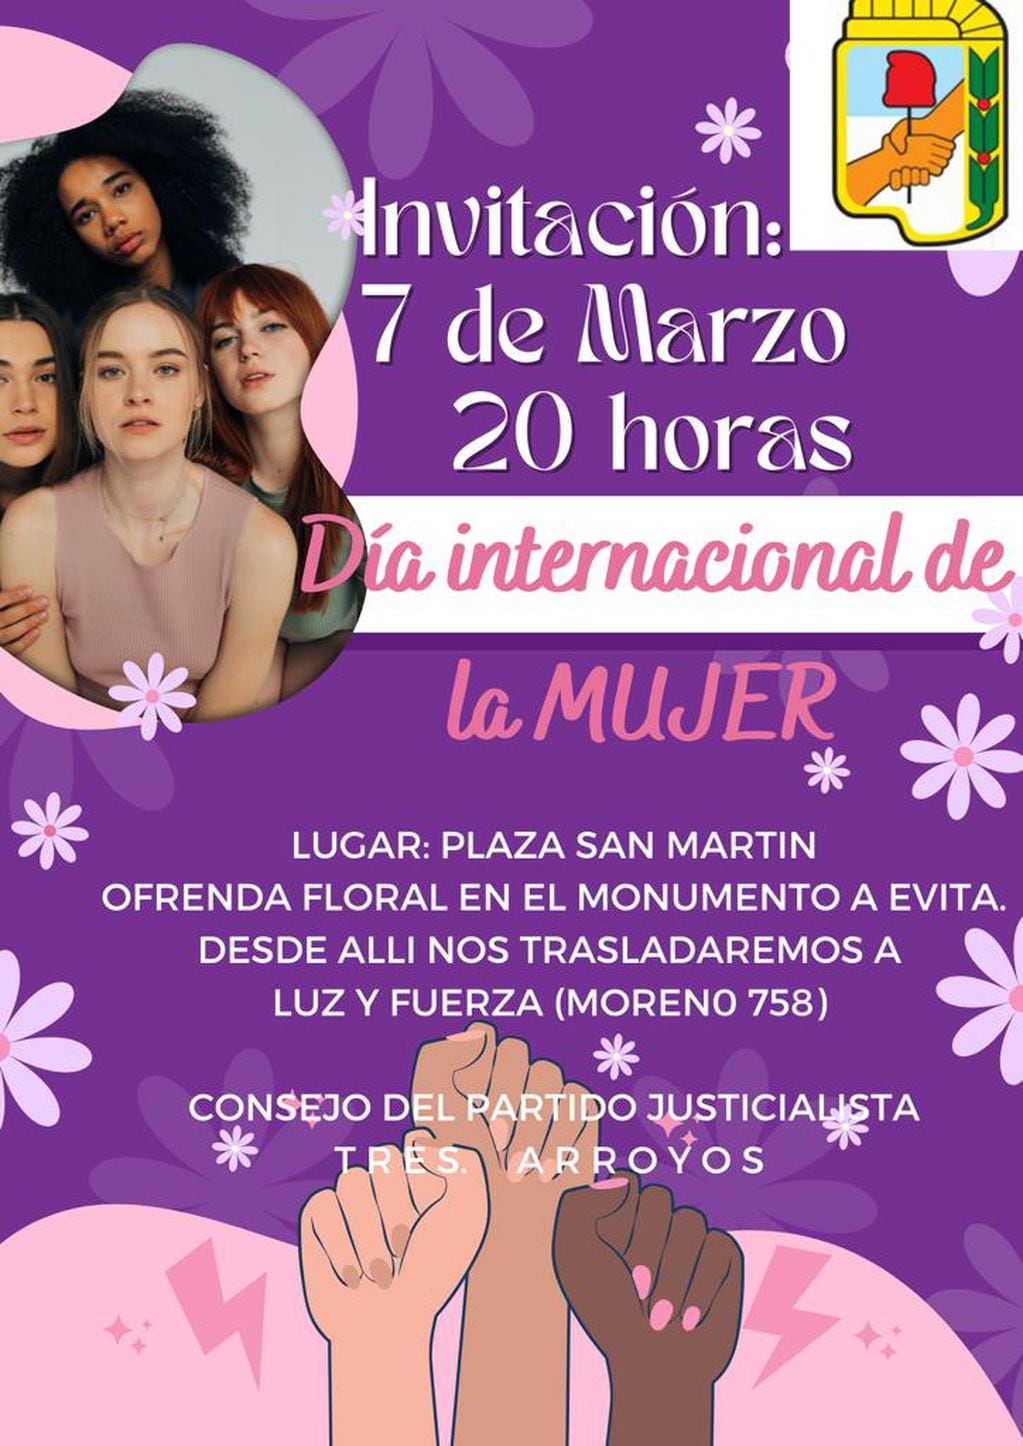 Día Internacional de la Mujer: El Consejo del partido Justicialista de  Tres  Arroyos  invita al Acto Homenaje